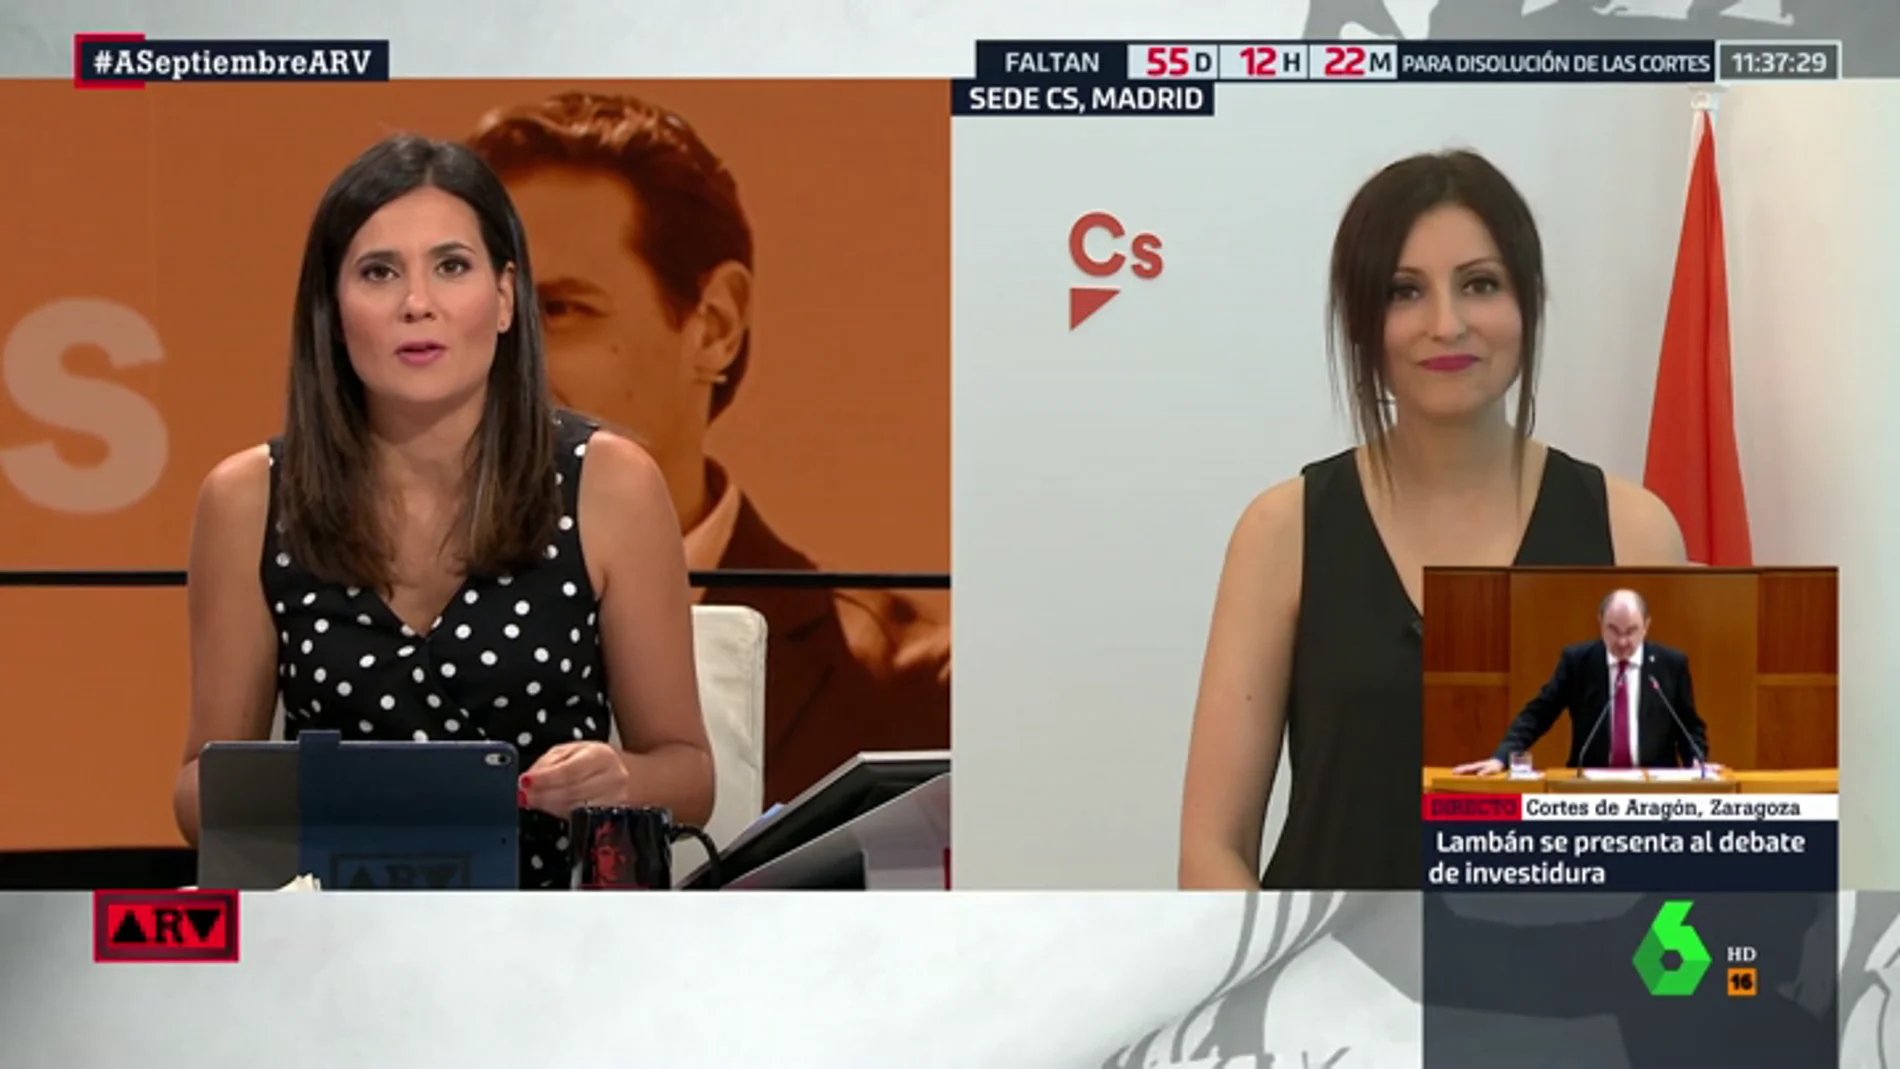 Lorena Roldán (Cs) rechaza formar un Gobierno en coalición con el PP: "Nosotros queremos hacer oposición"